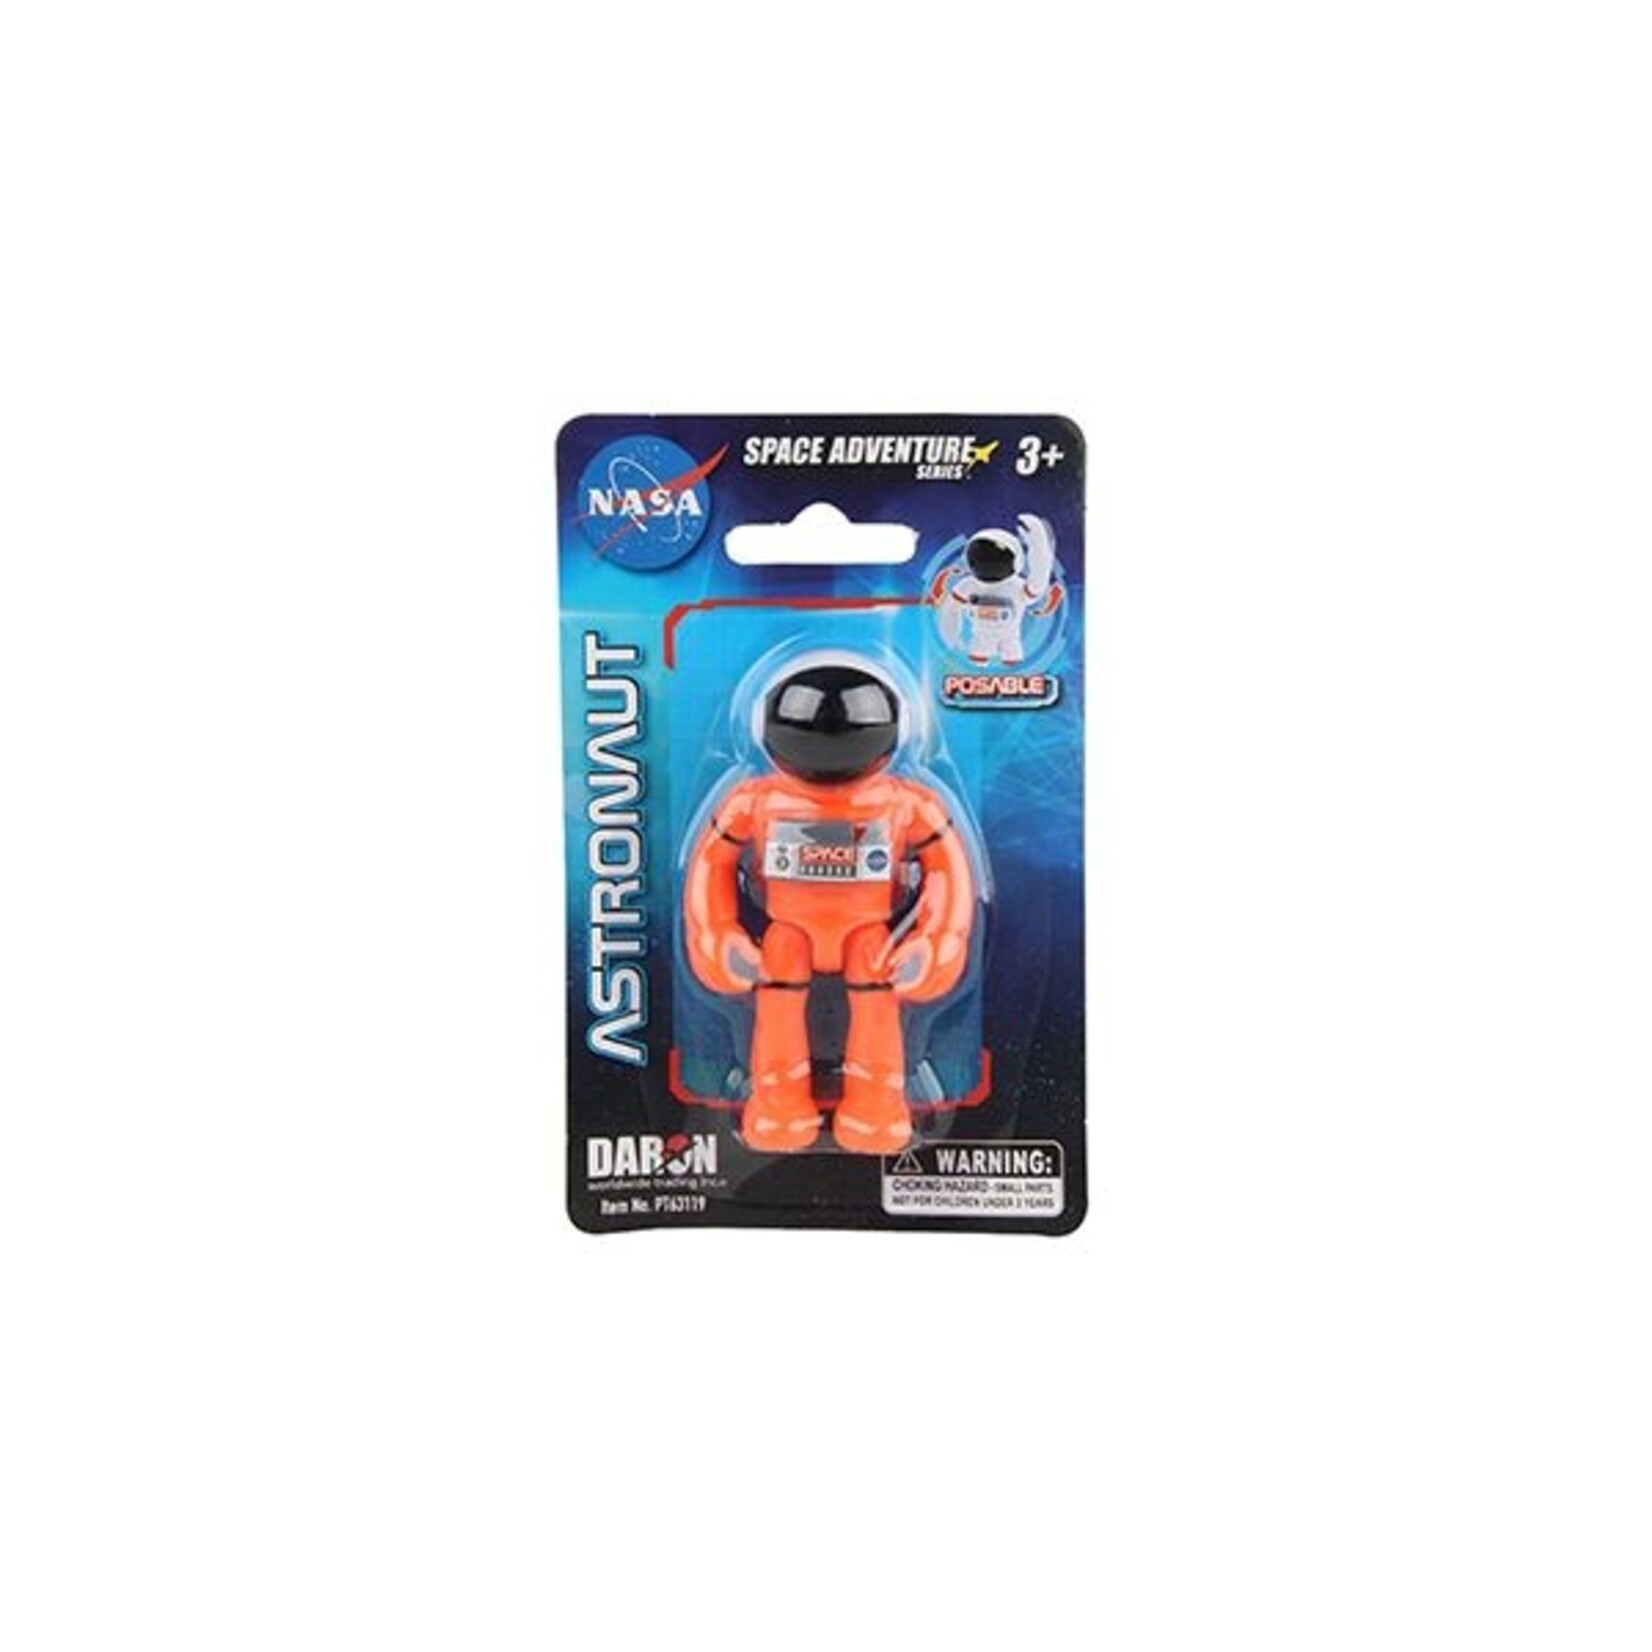 daron space adventure astronaut figure